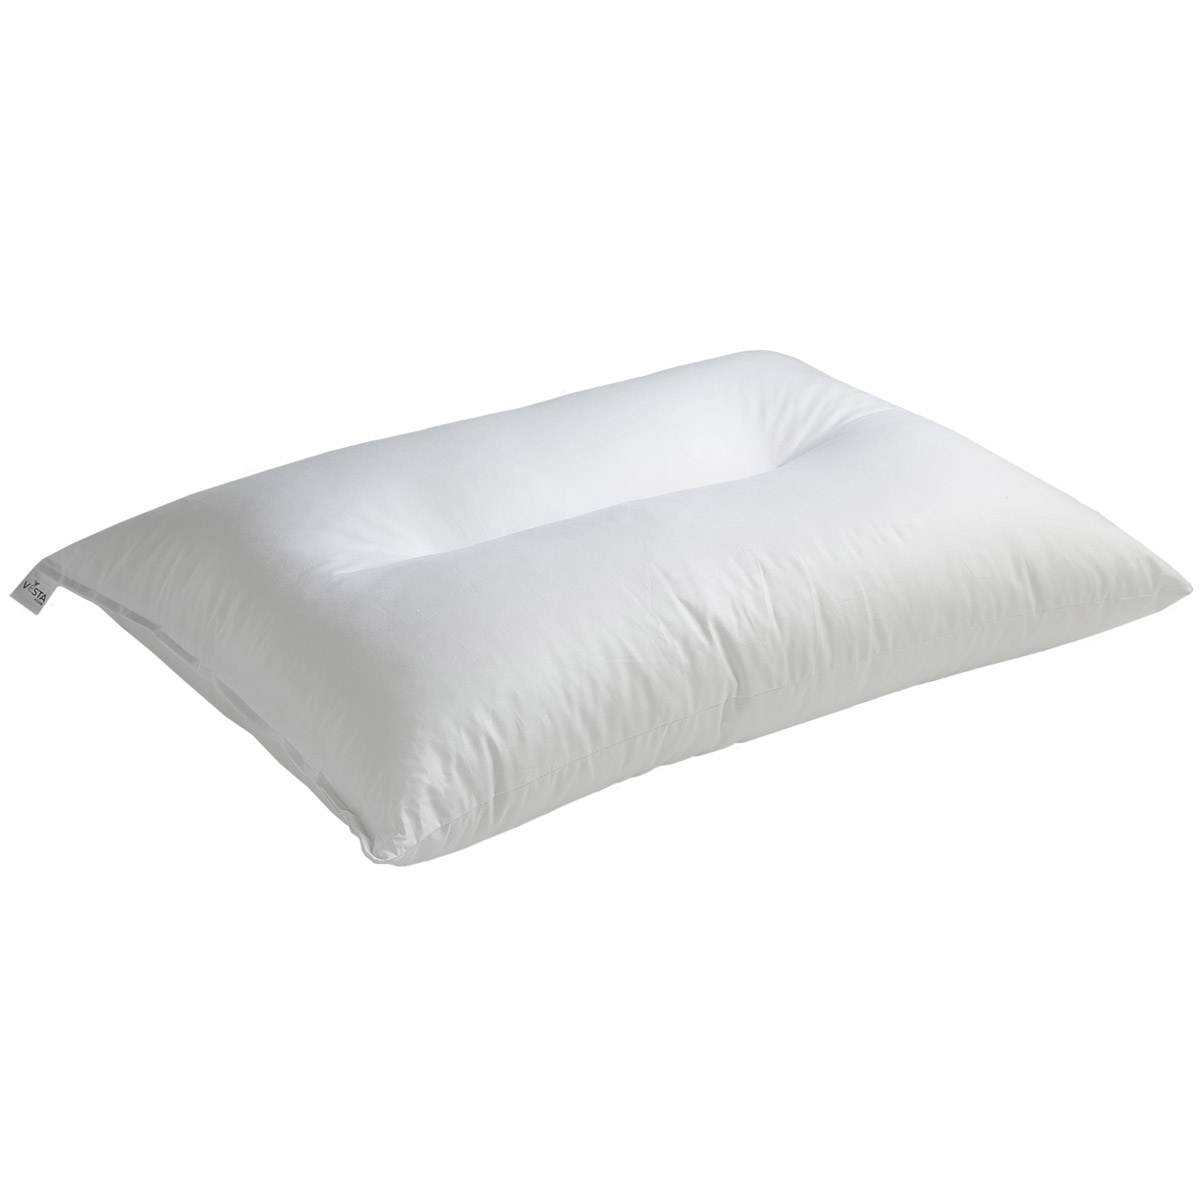 Μαξιλάρι Ύπνου Ανατομικό Σκληρό (50×70) Vesta Linear Polyester 47306